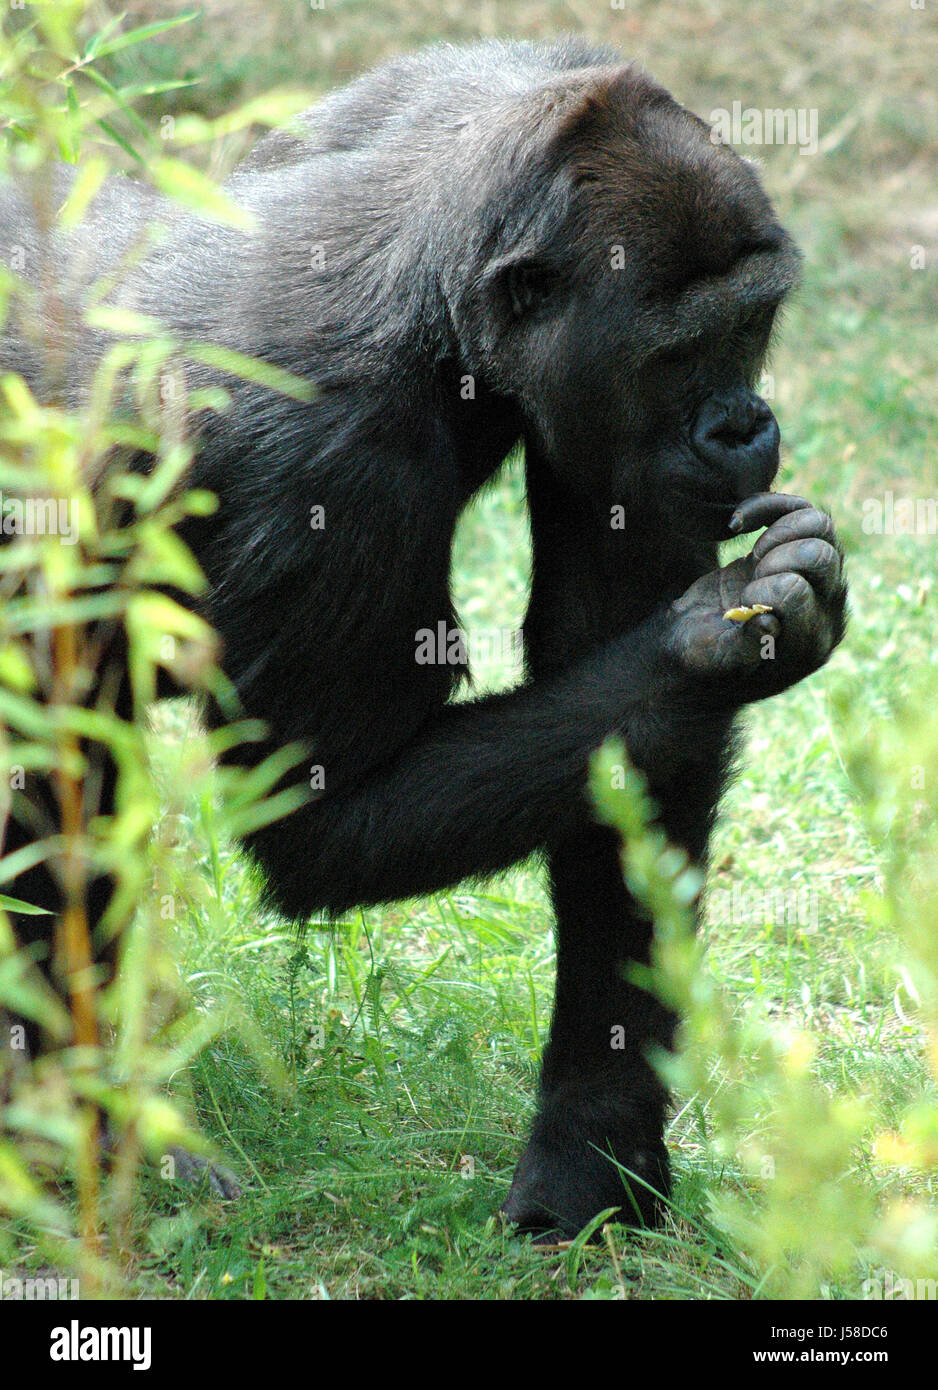 wilde Affen Urwald Gorillas Menschenaffen Wiese Regenwald Regenwald Stockfoto